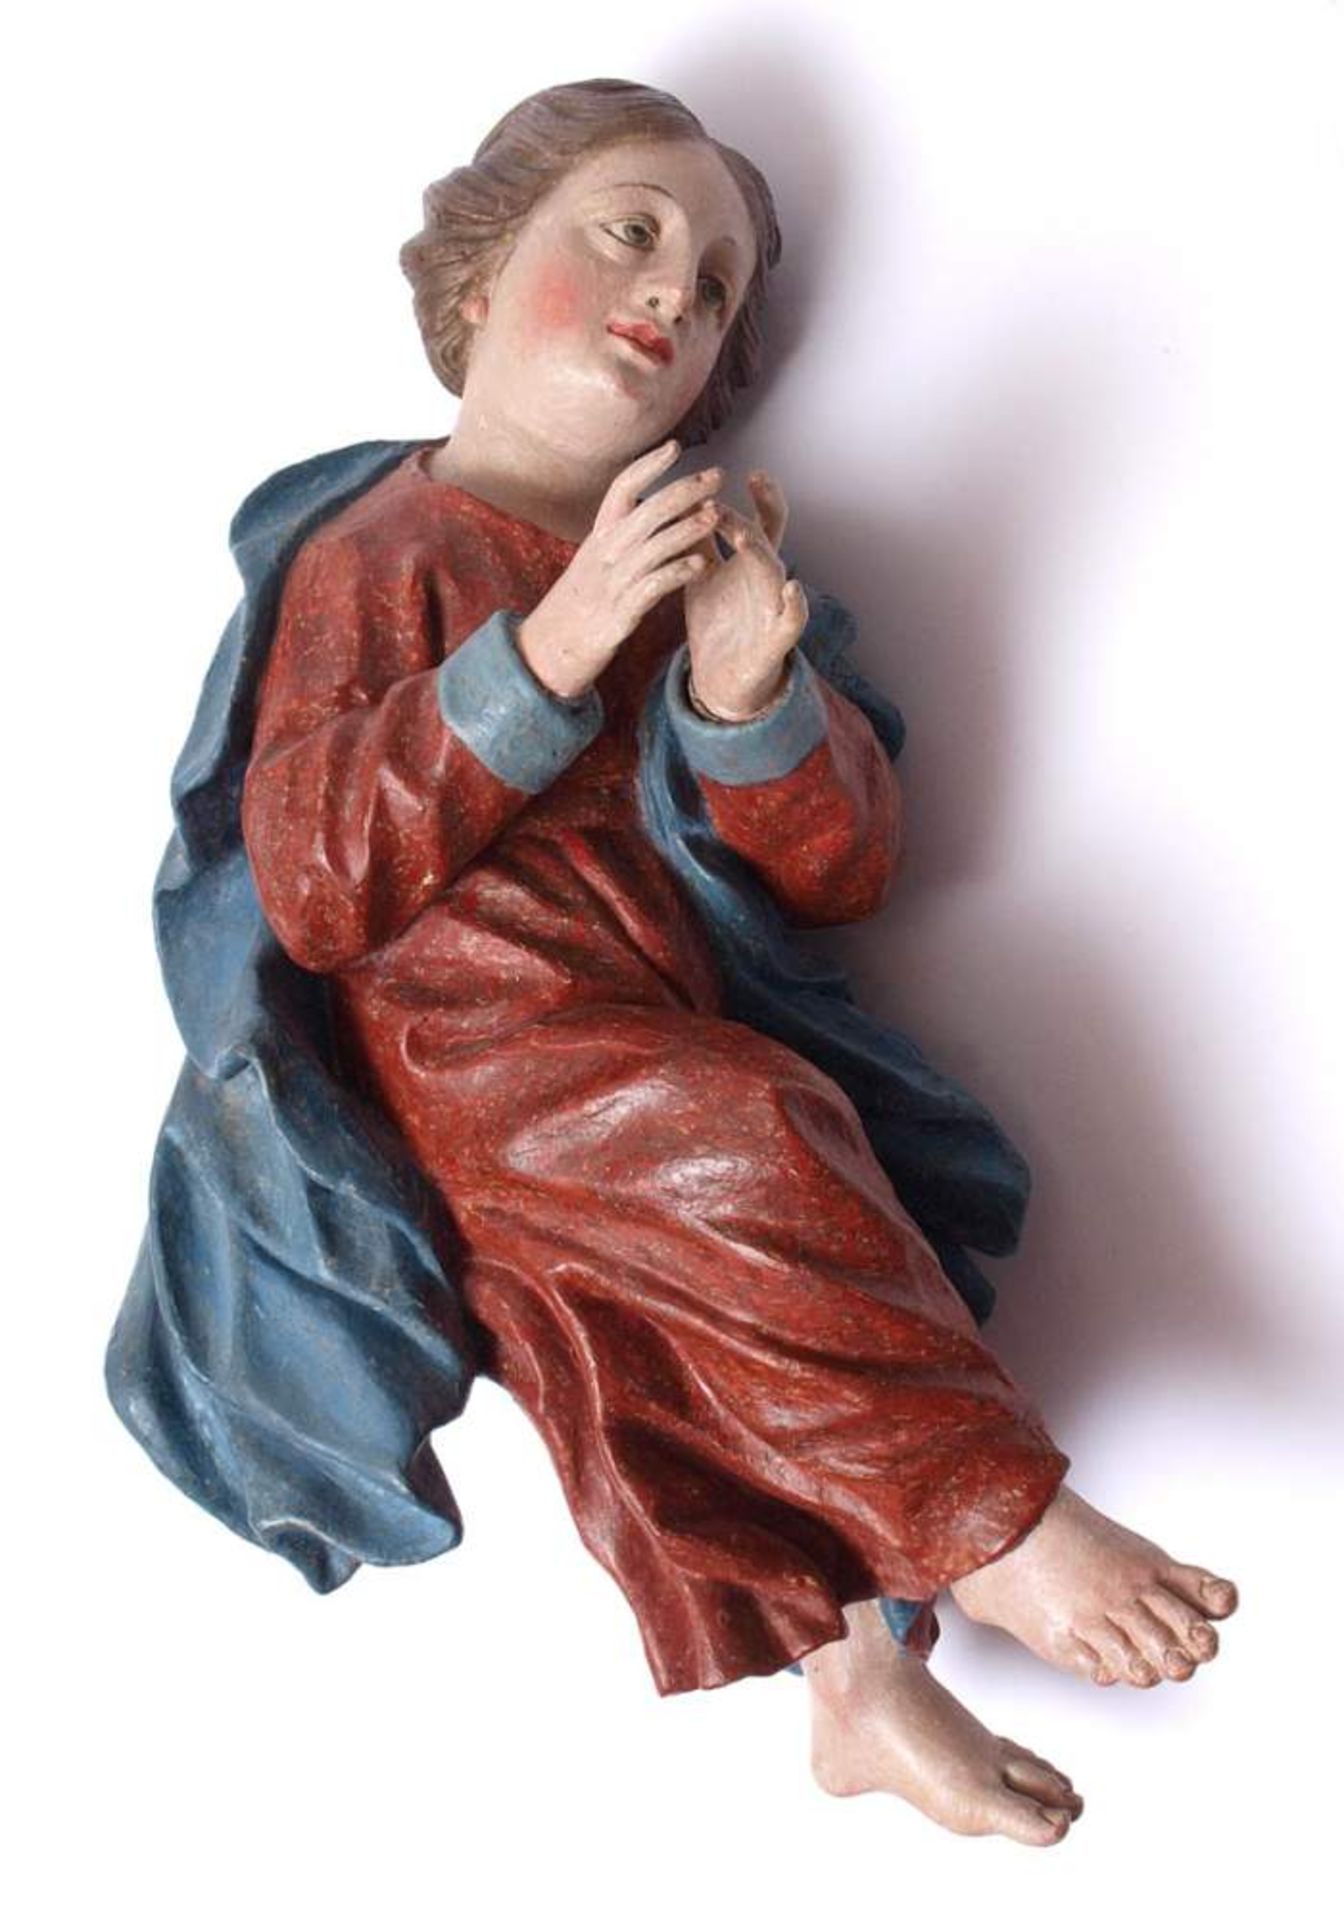 Figurine, süddeutsch, 18.Jhdt.Sitzende Gestalt einer jungen Frau mit übereinander geschlagenen